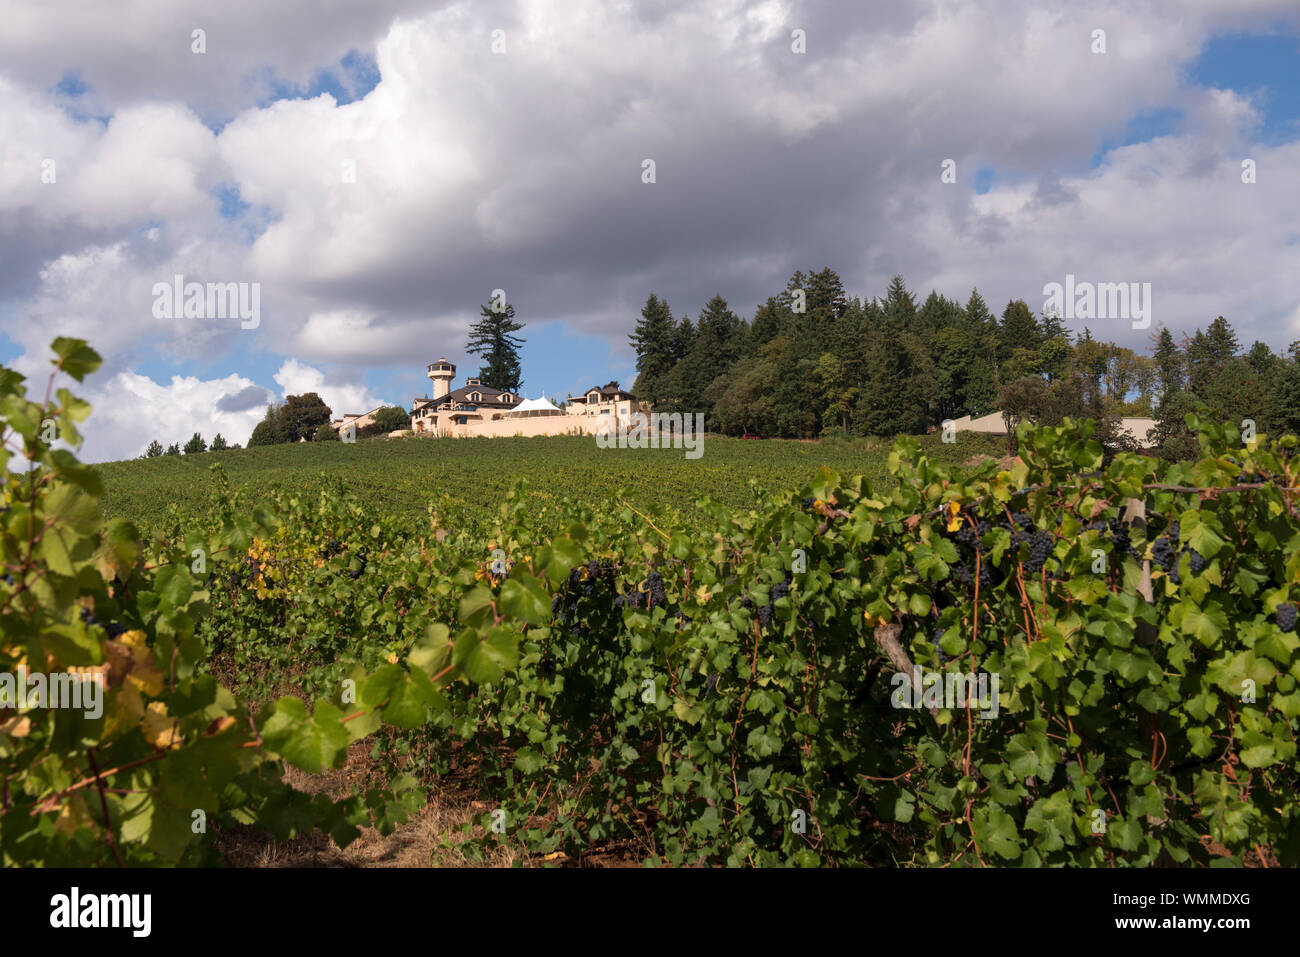 Willamette Valley Vineyards est un producteur bien connu du Pinot Noir et est situé dans Turner, juste à l'extérieur de Salem, Oregon. Banque D'Images